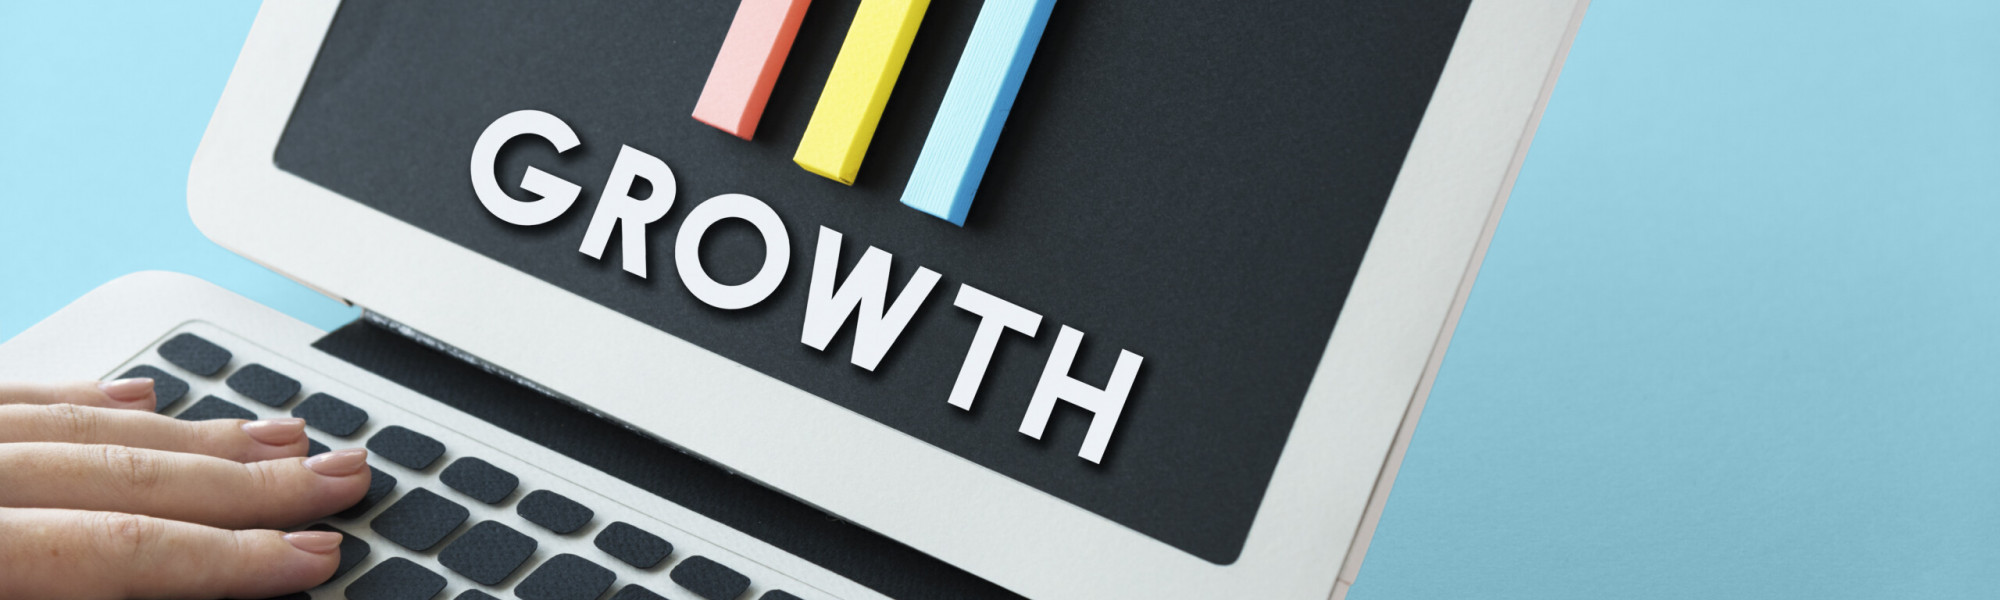 Graph Growth Development Improvement Profit Success Concept